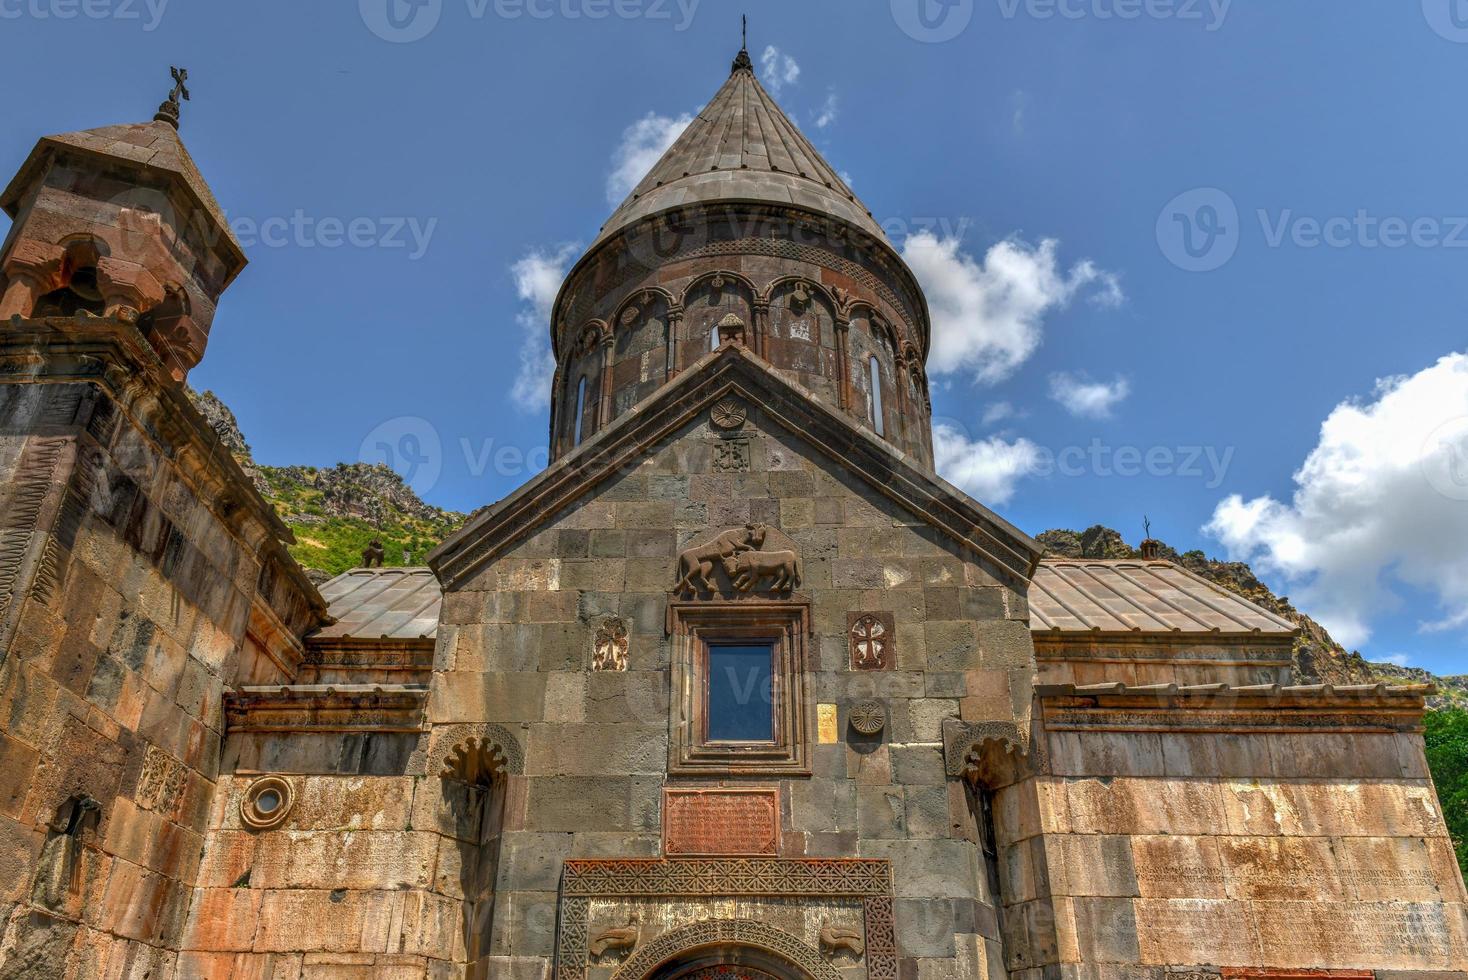 geghard es un monasterio medieval en la provincia de kotayk de armenia, excavado en la montaña adyacente. está catalogado como patrimonio de la humanidad por la unesco. foto